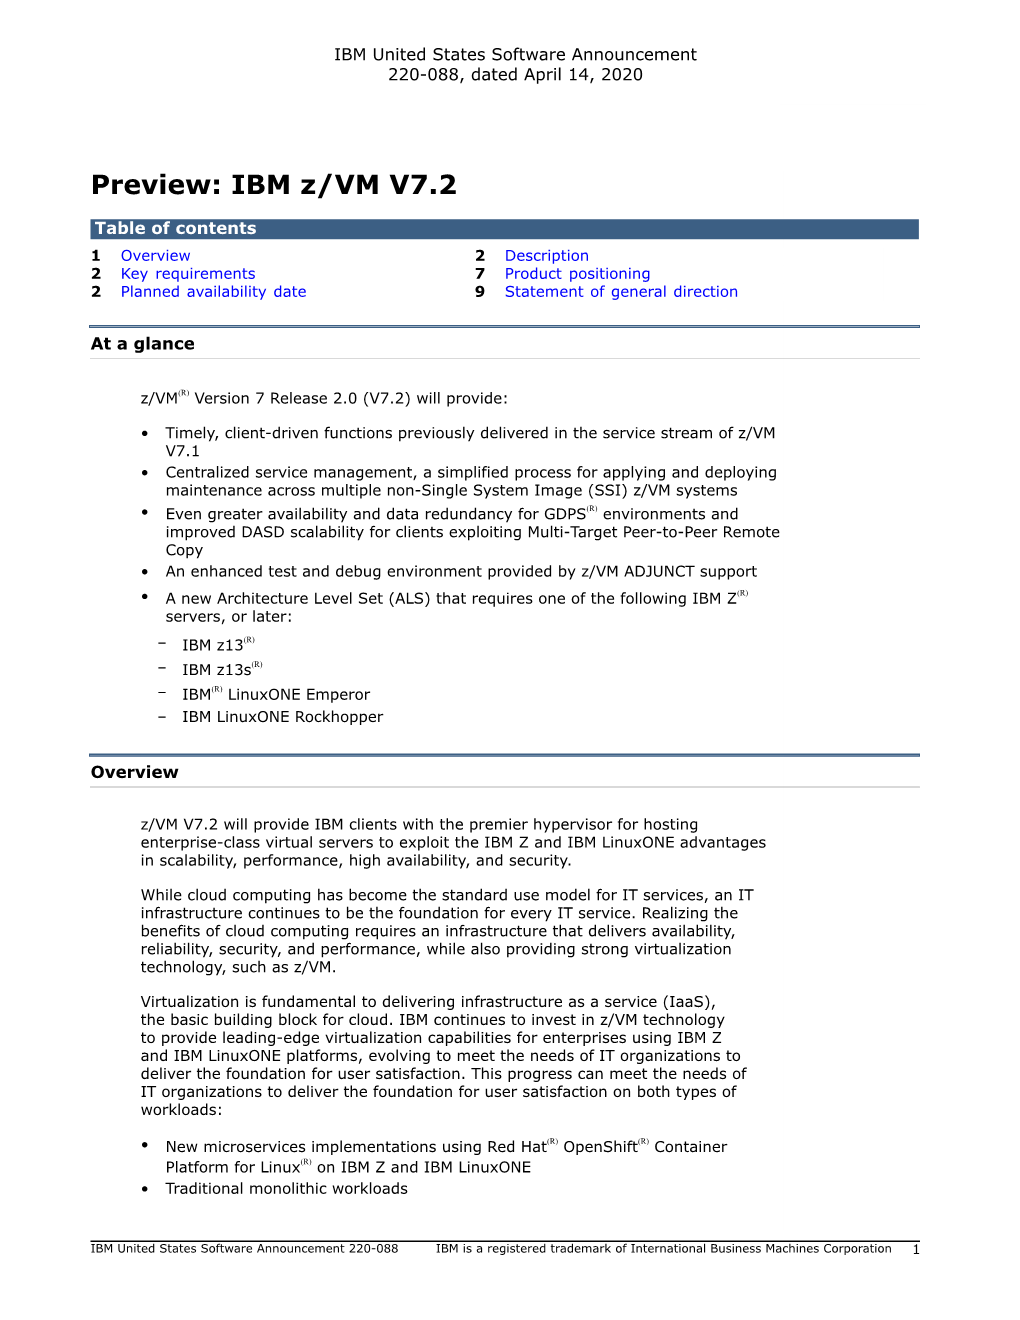 Preview: IBM Z/VM V7.2